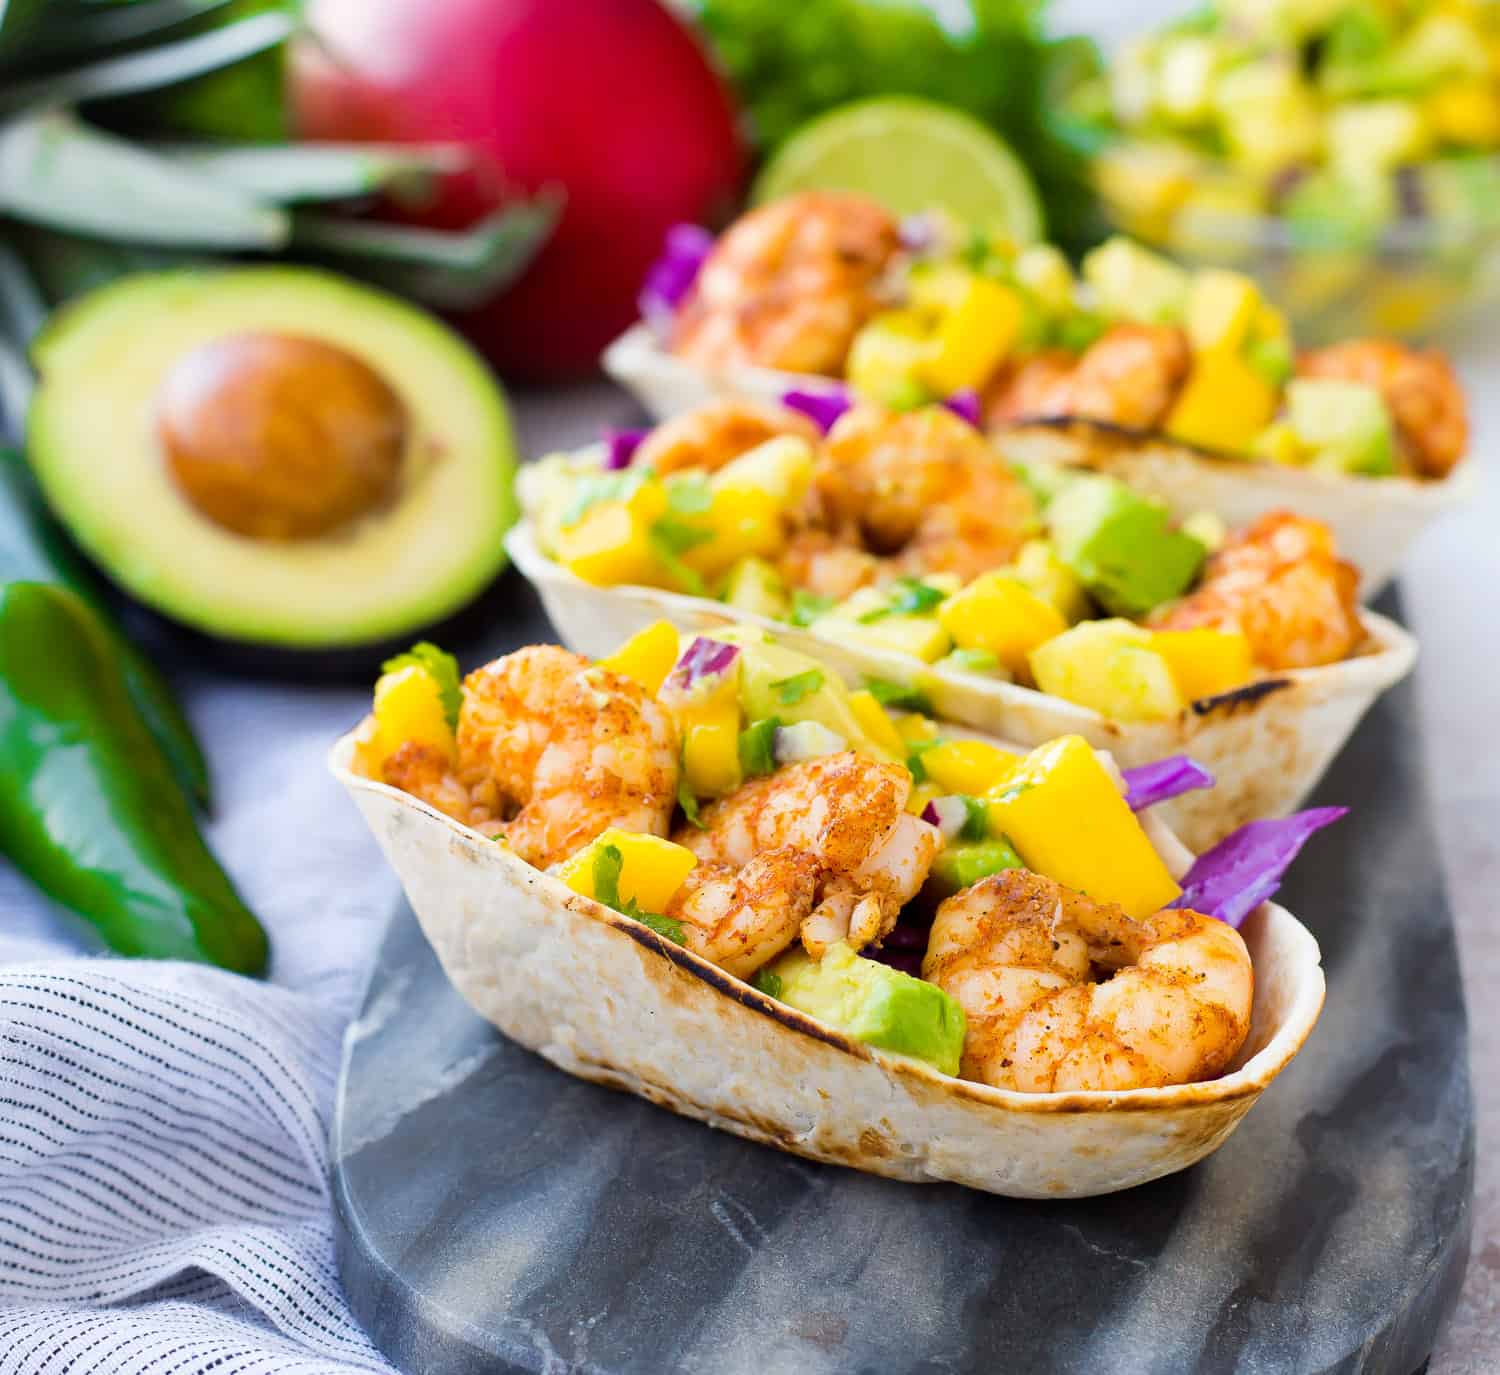 Shrimp tacos topped with mango avocado salsa.